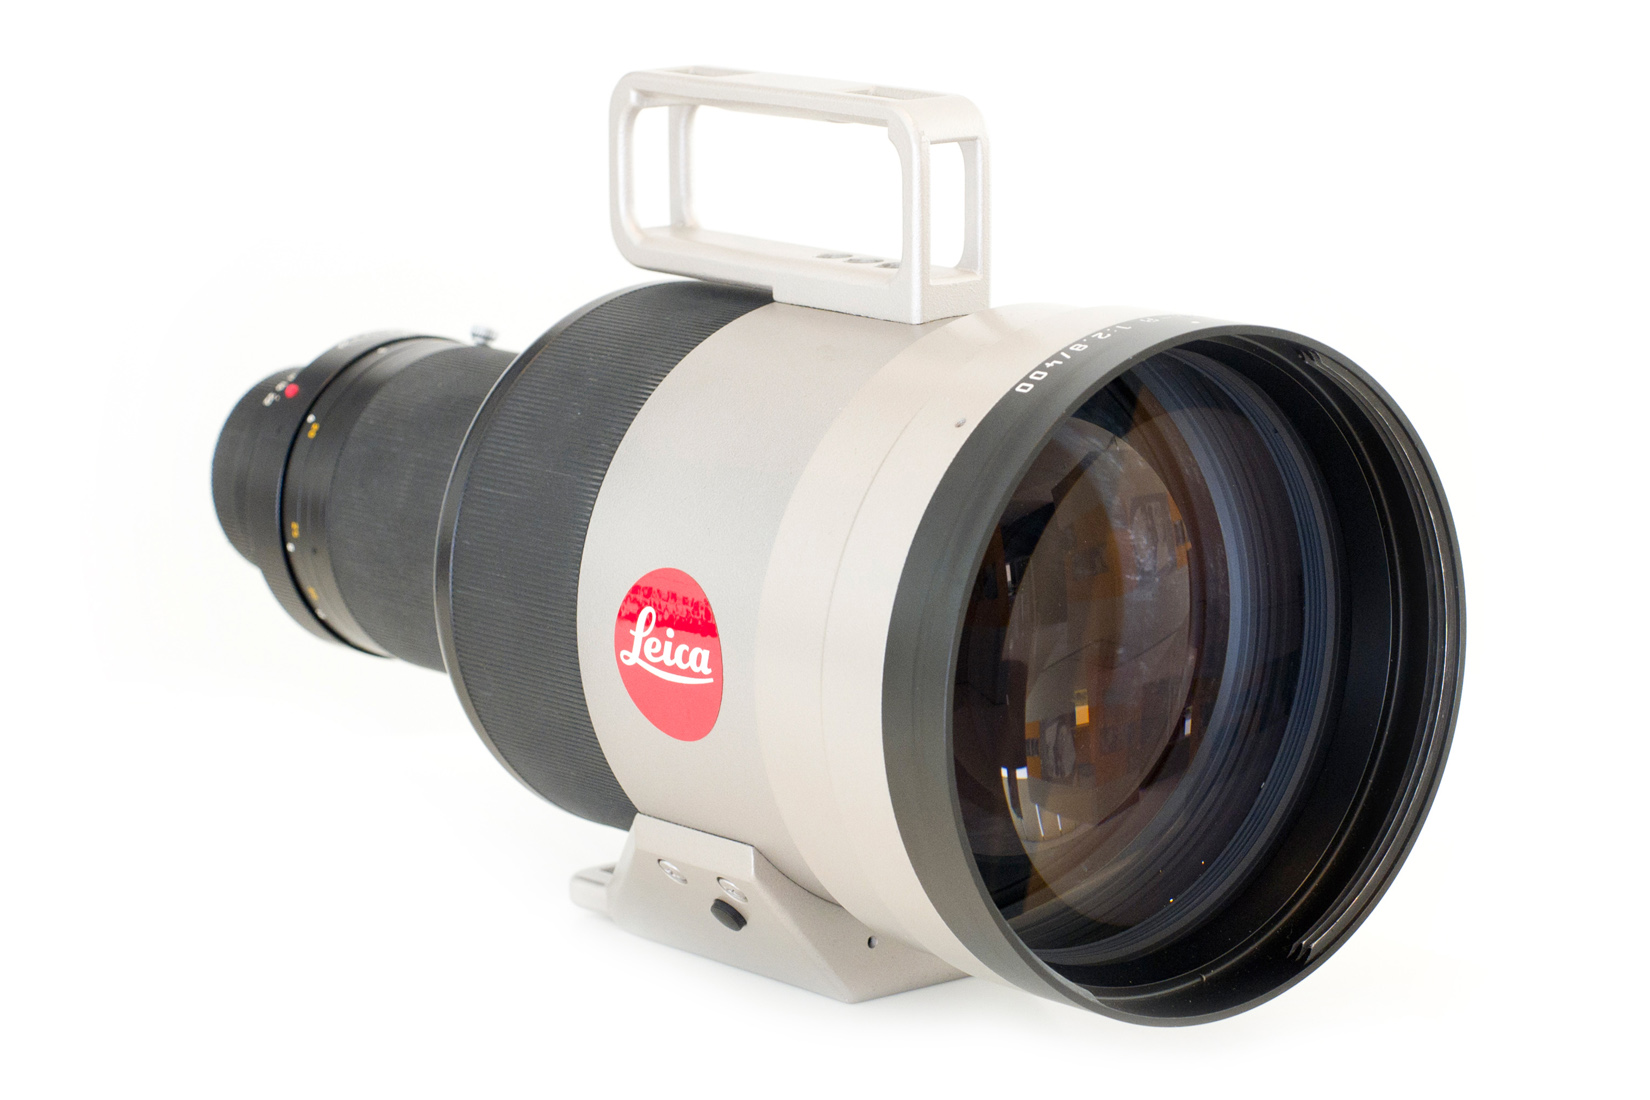 Leica APO-Telyt-R 1:2,8/400mm